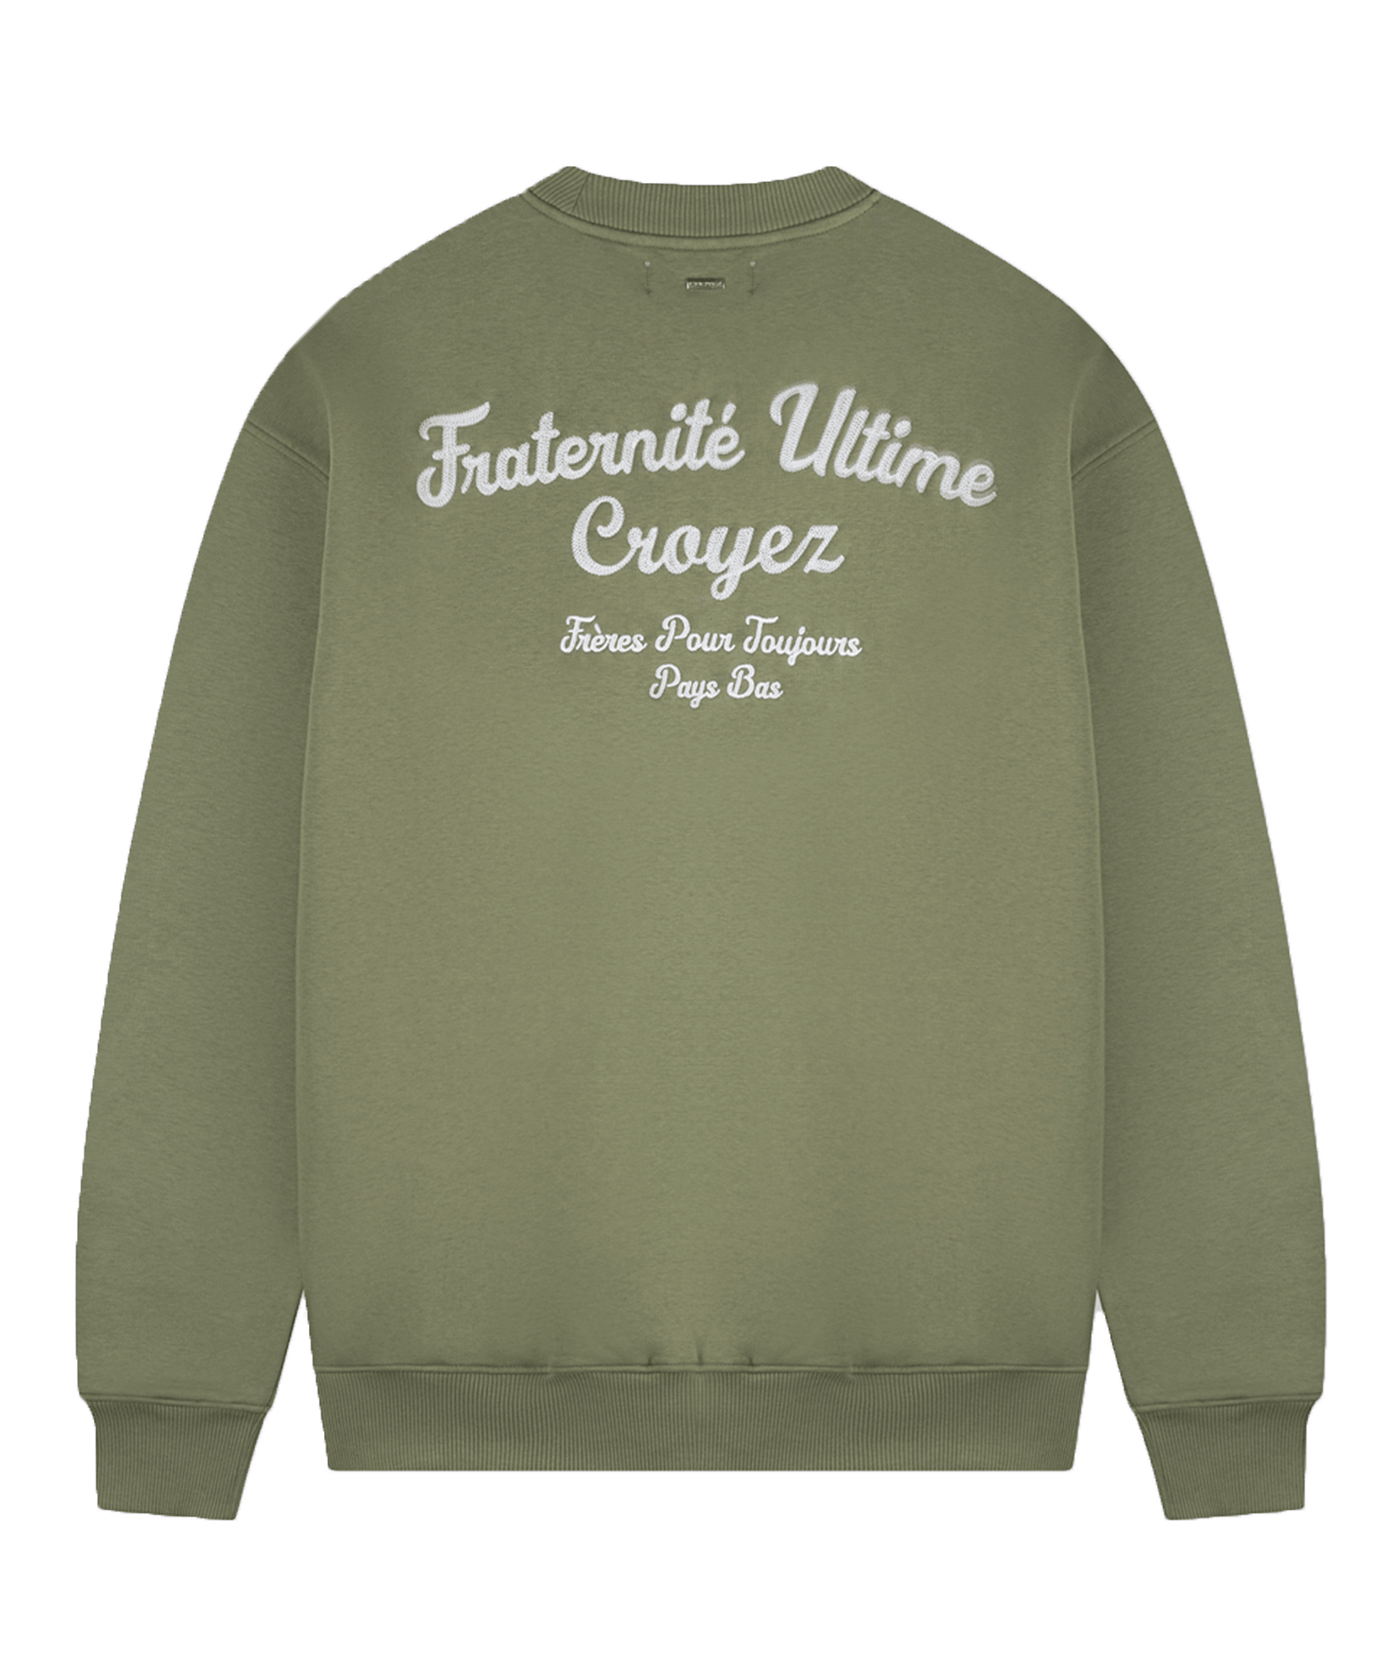 CROYEZ - Fraternite - Sweater - Washed Olive